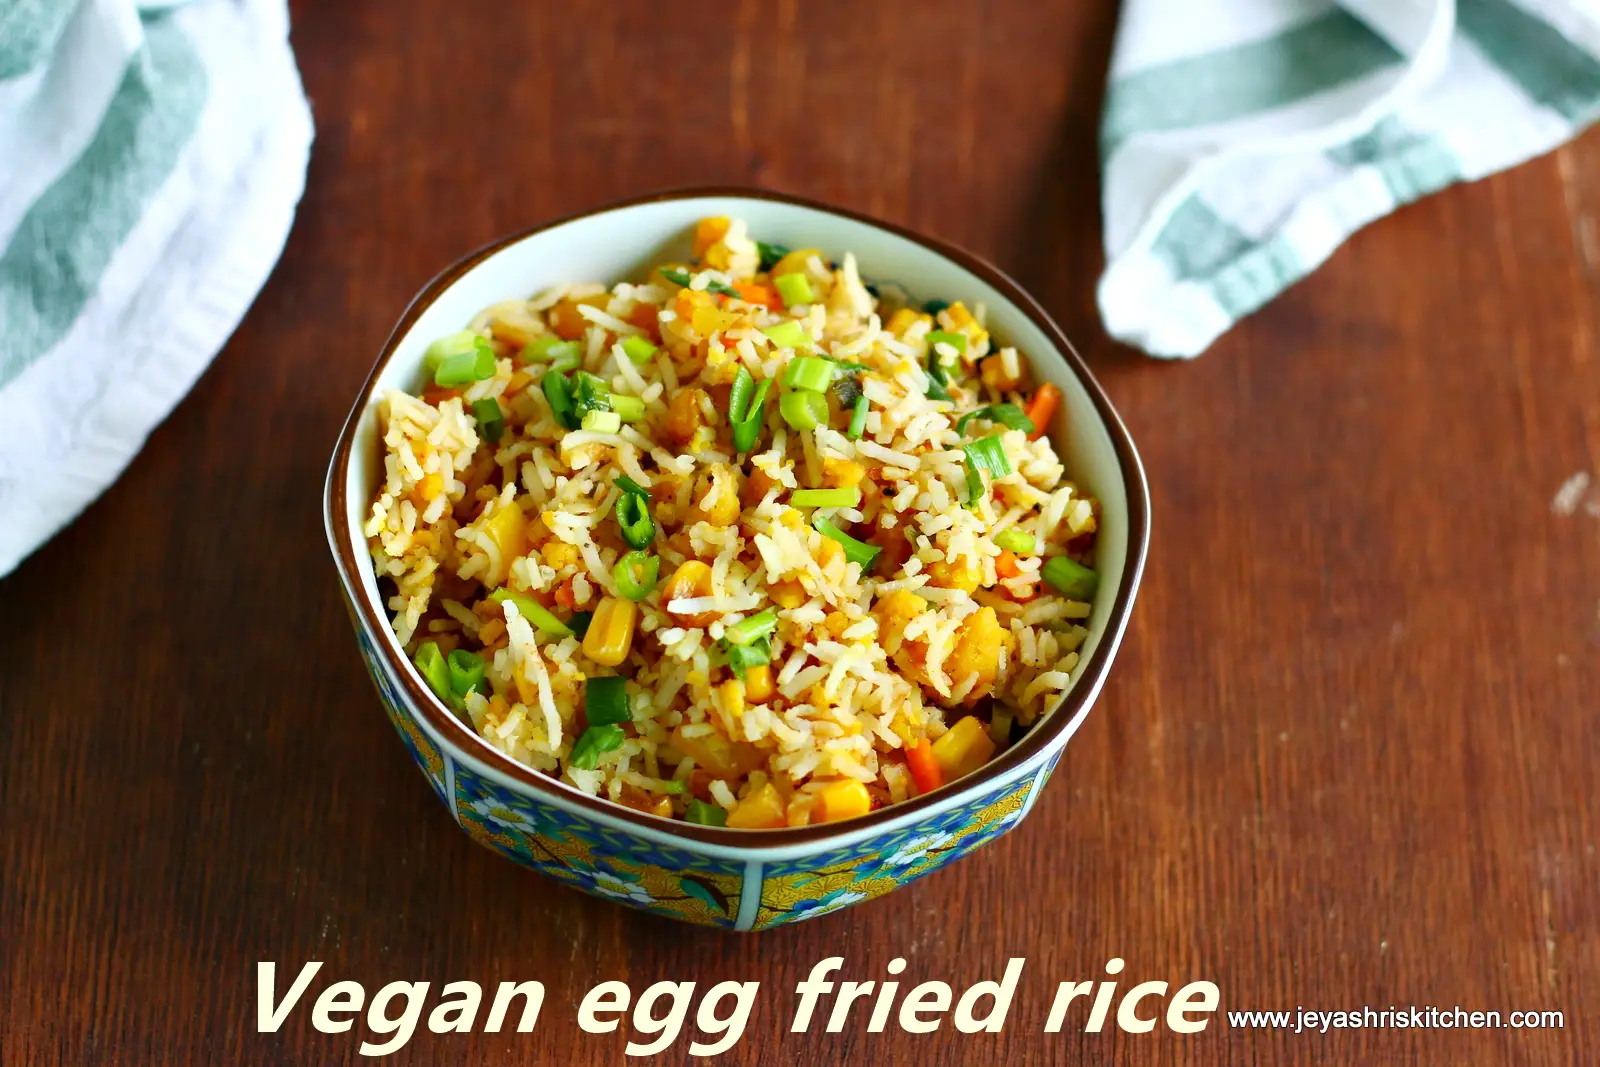 Vegan egg fried rice